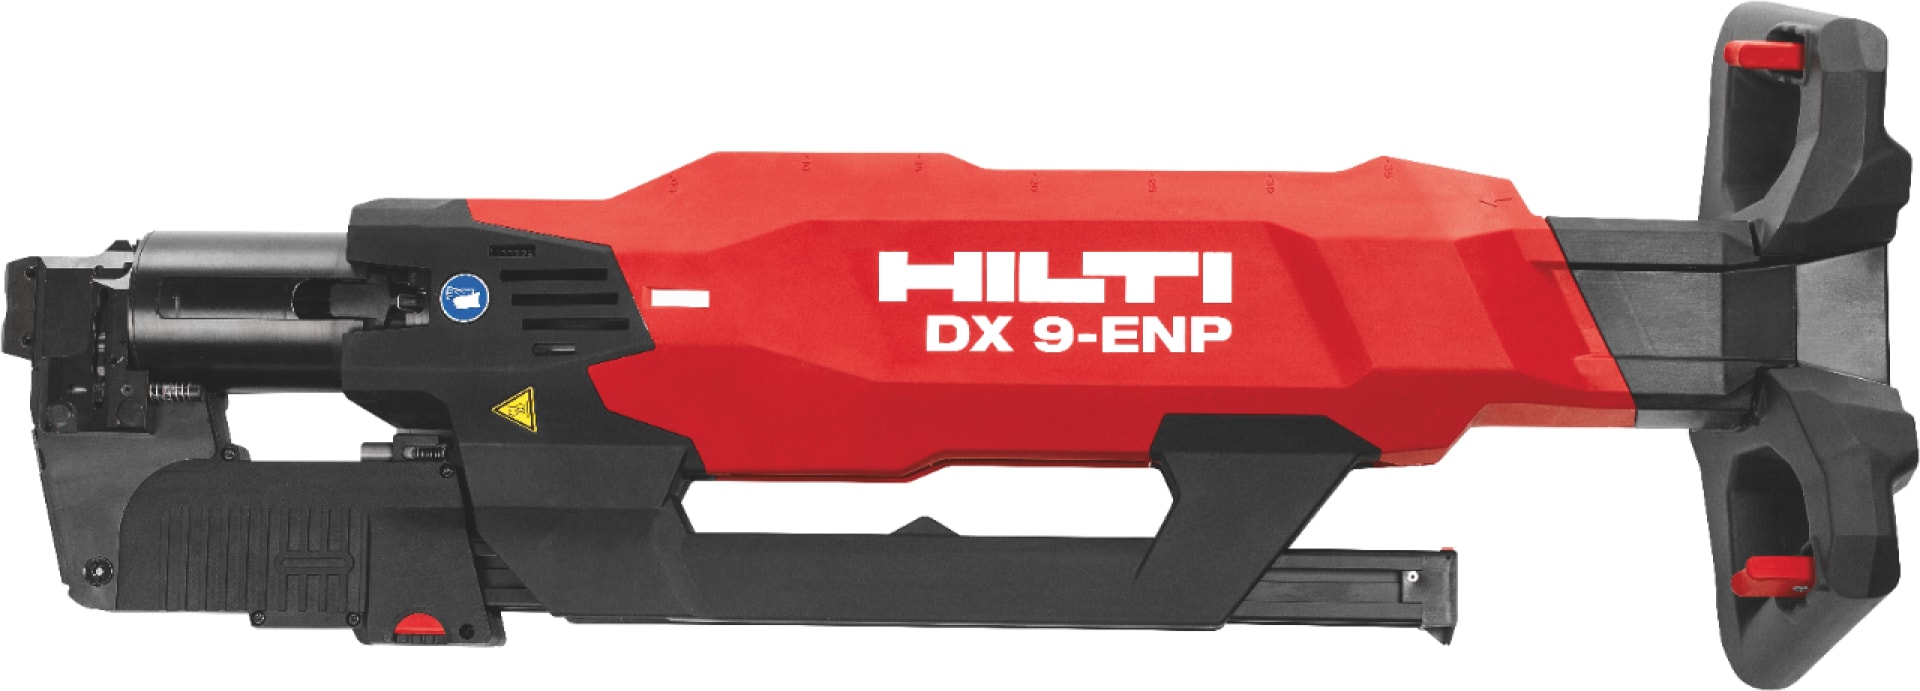 W pełni automatyczny osadzak DX 9-ENP Hilti